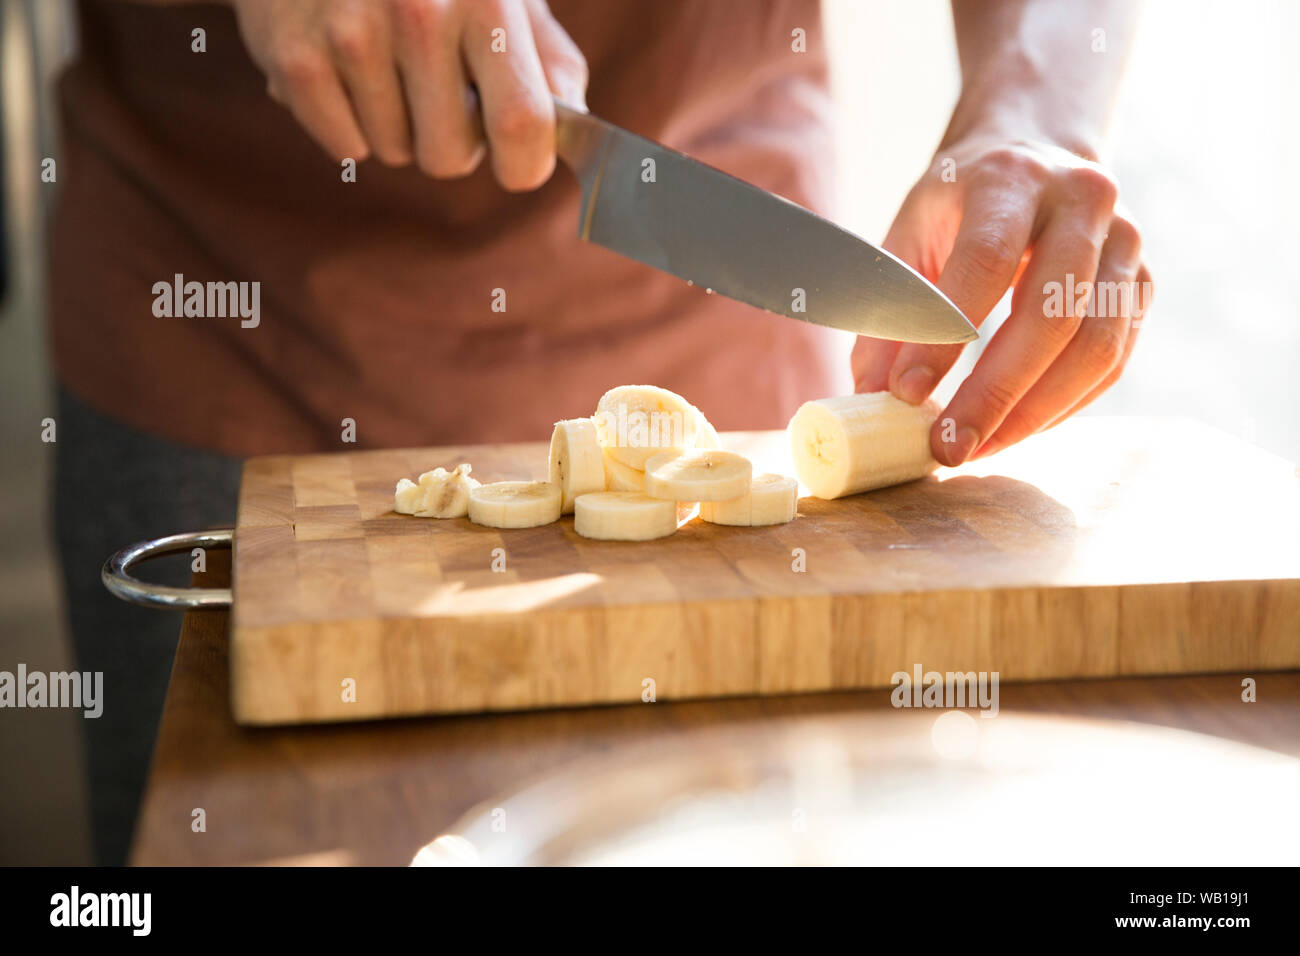 La mano del hombre picado de plátano con cuchillo de cocina Foto de stock